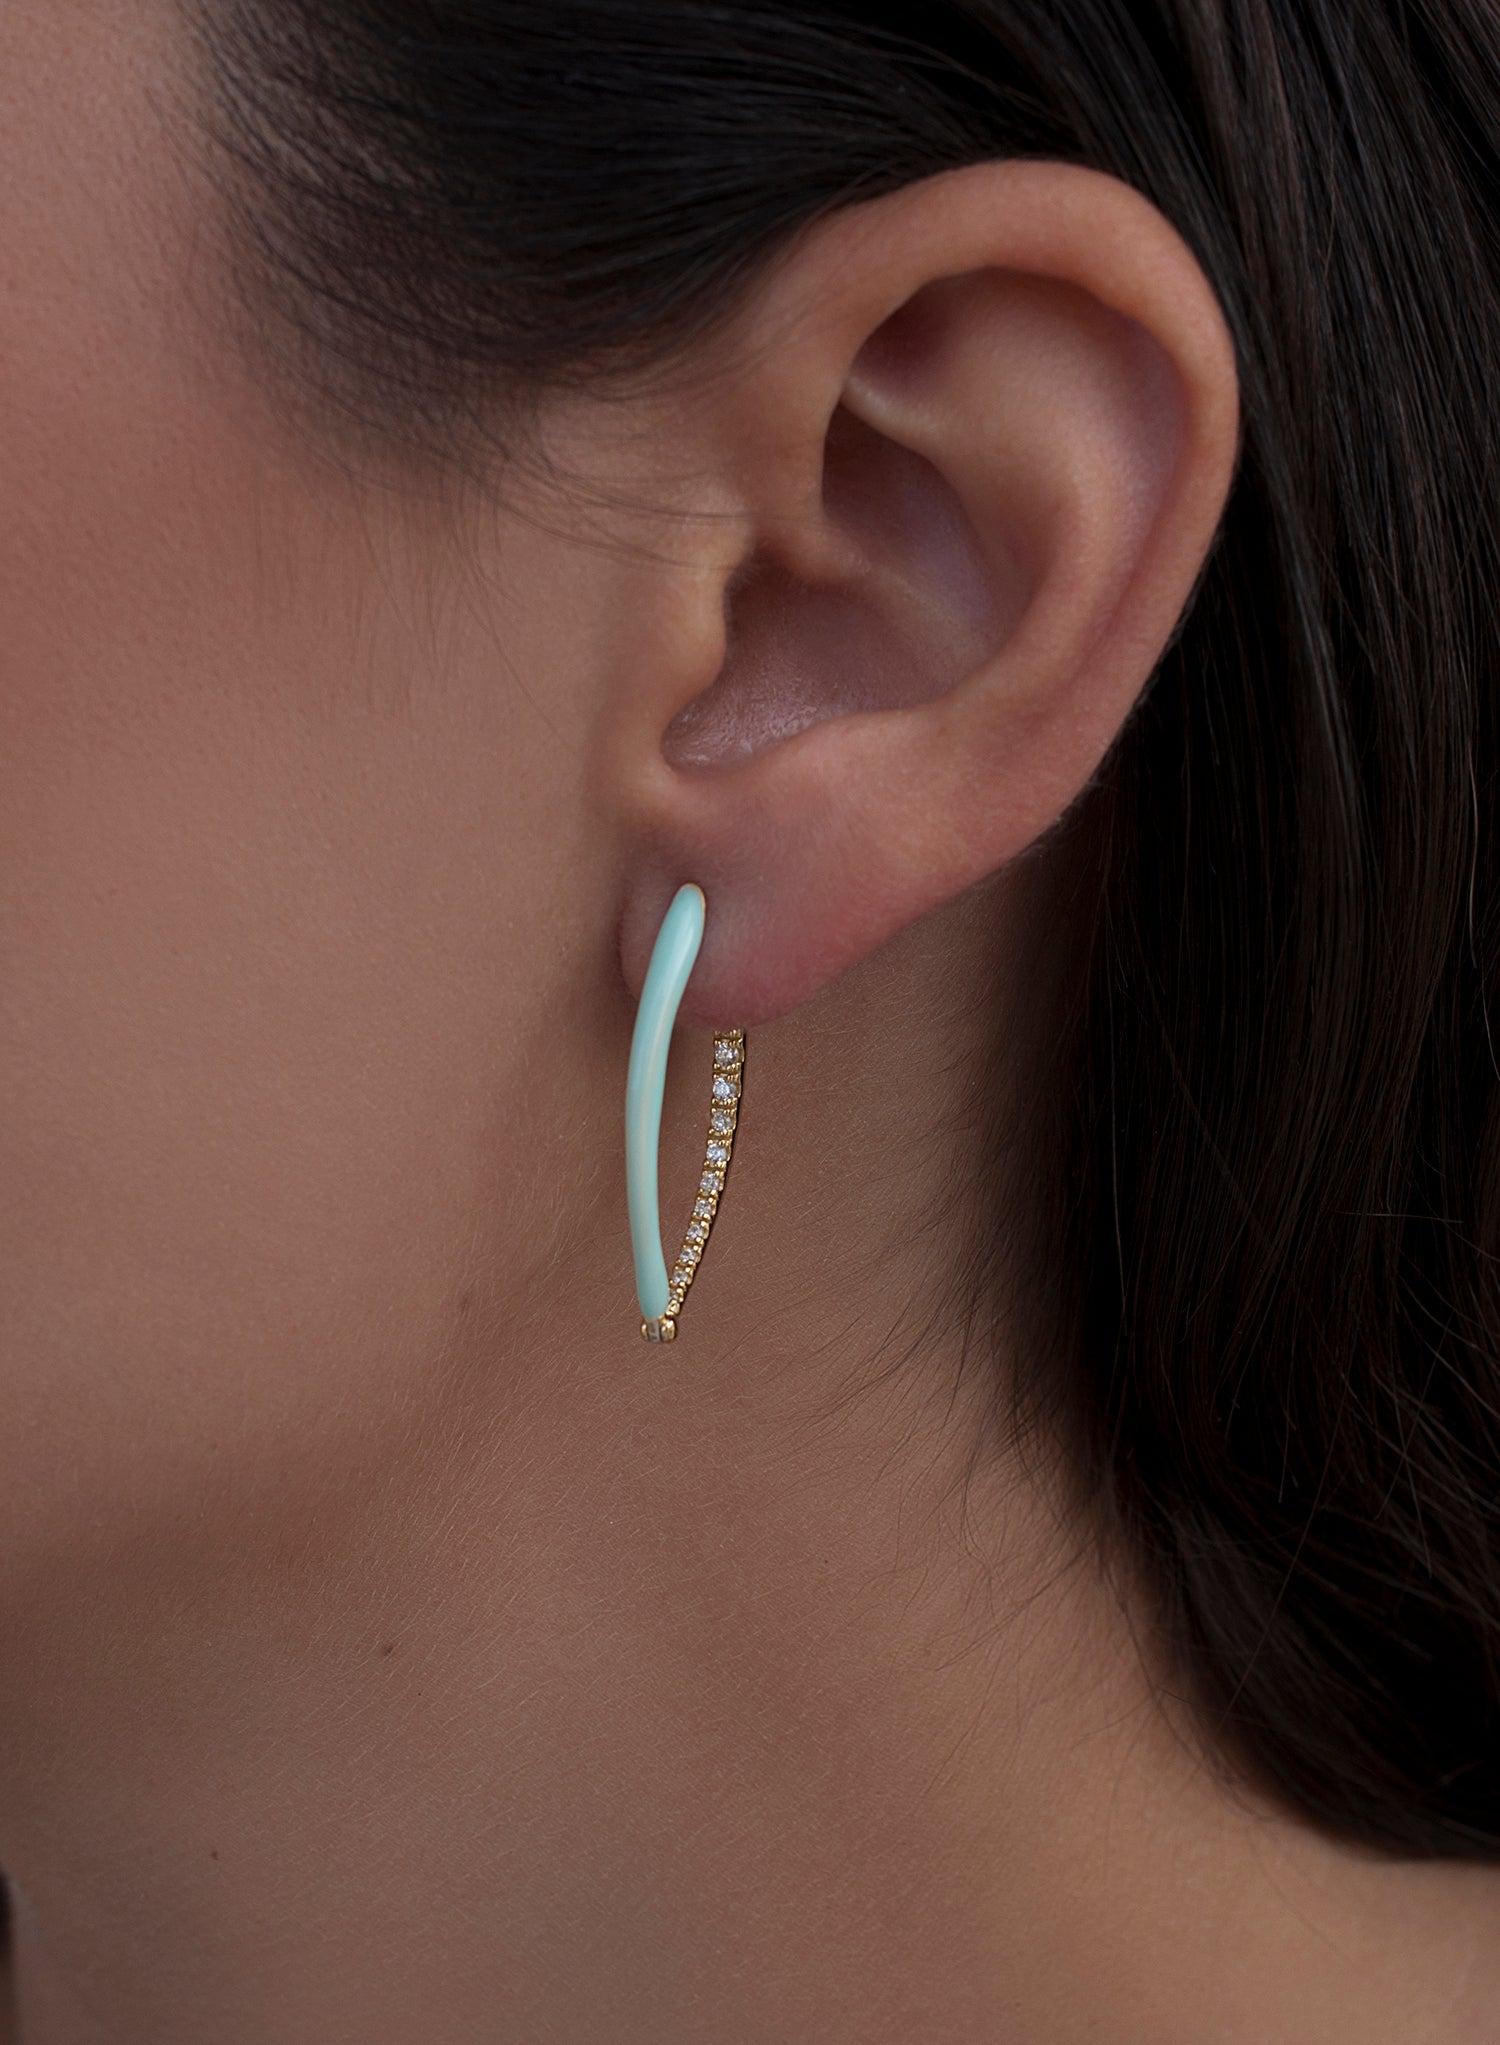 Earrings - Original earrings in mint enamel silver